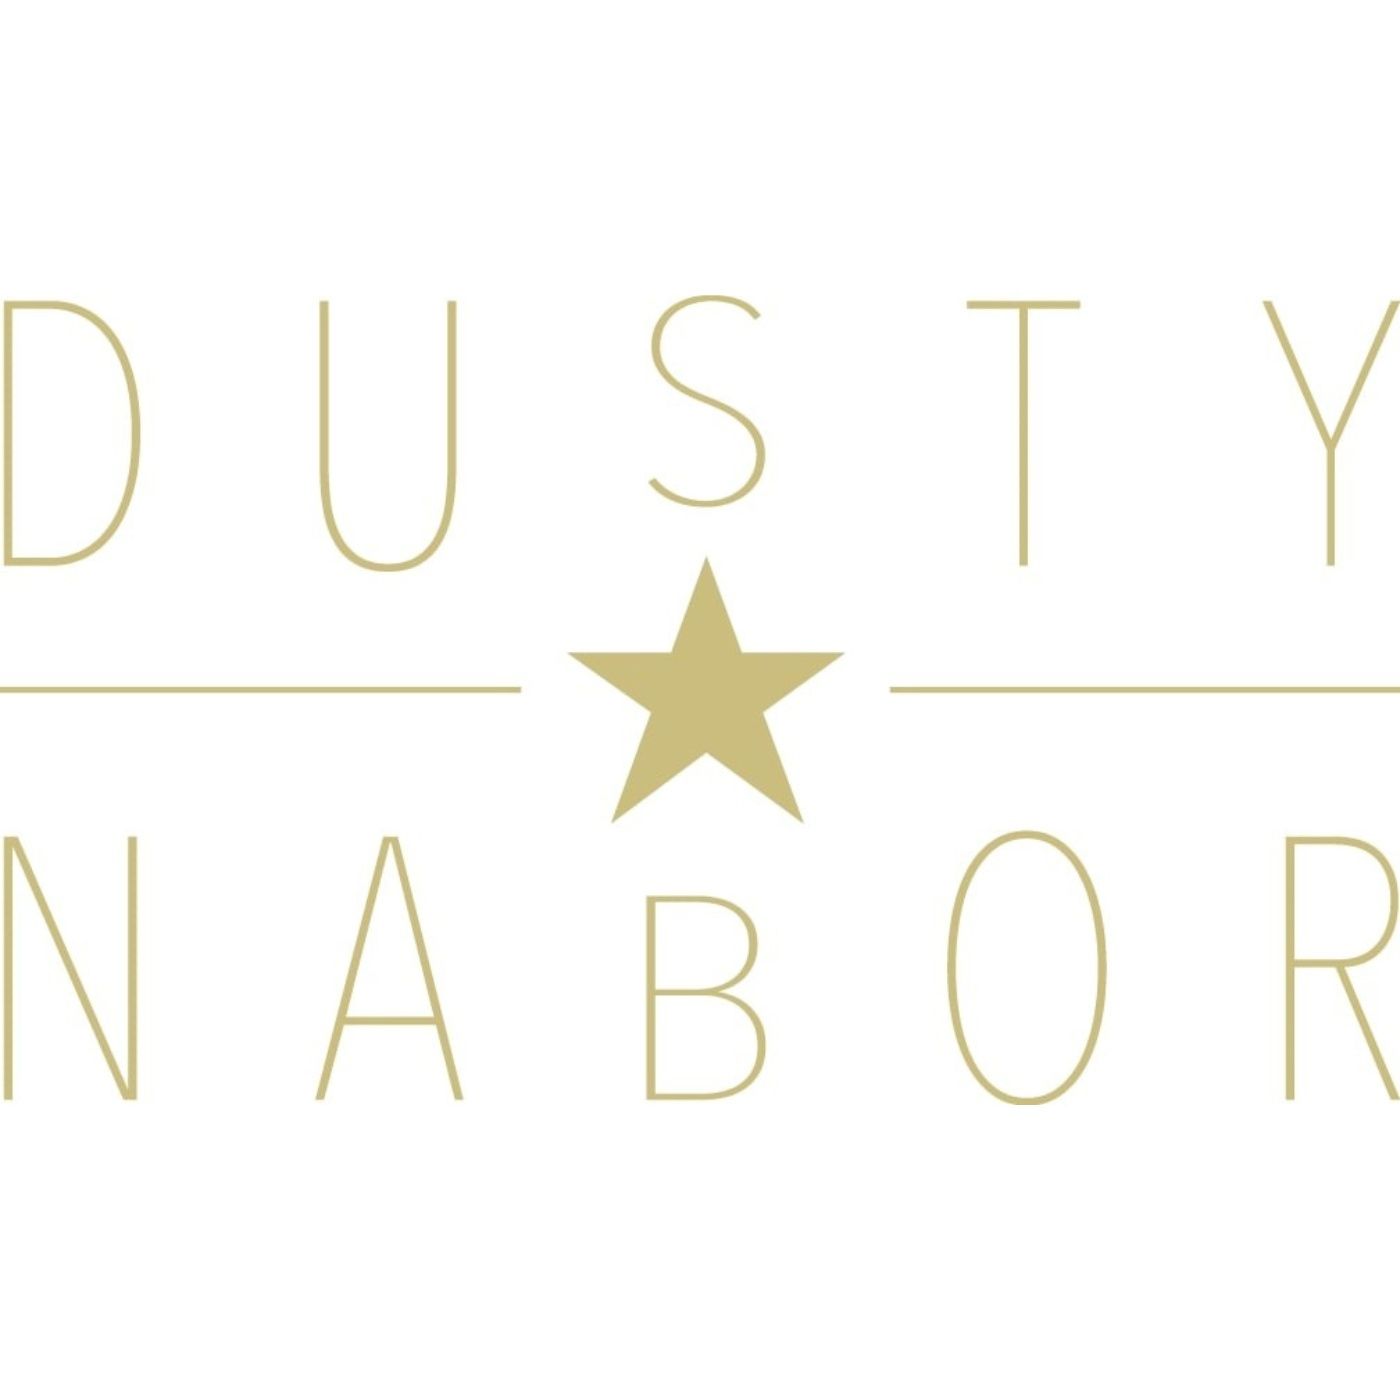 Dusty Nabor - Dusty Nabor